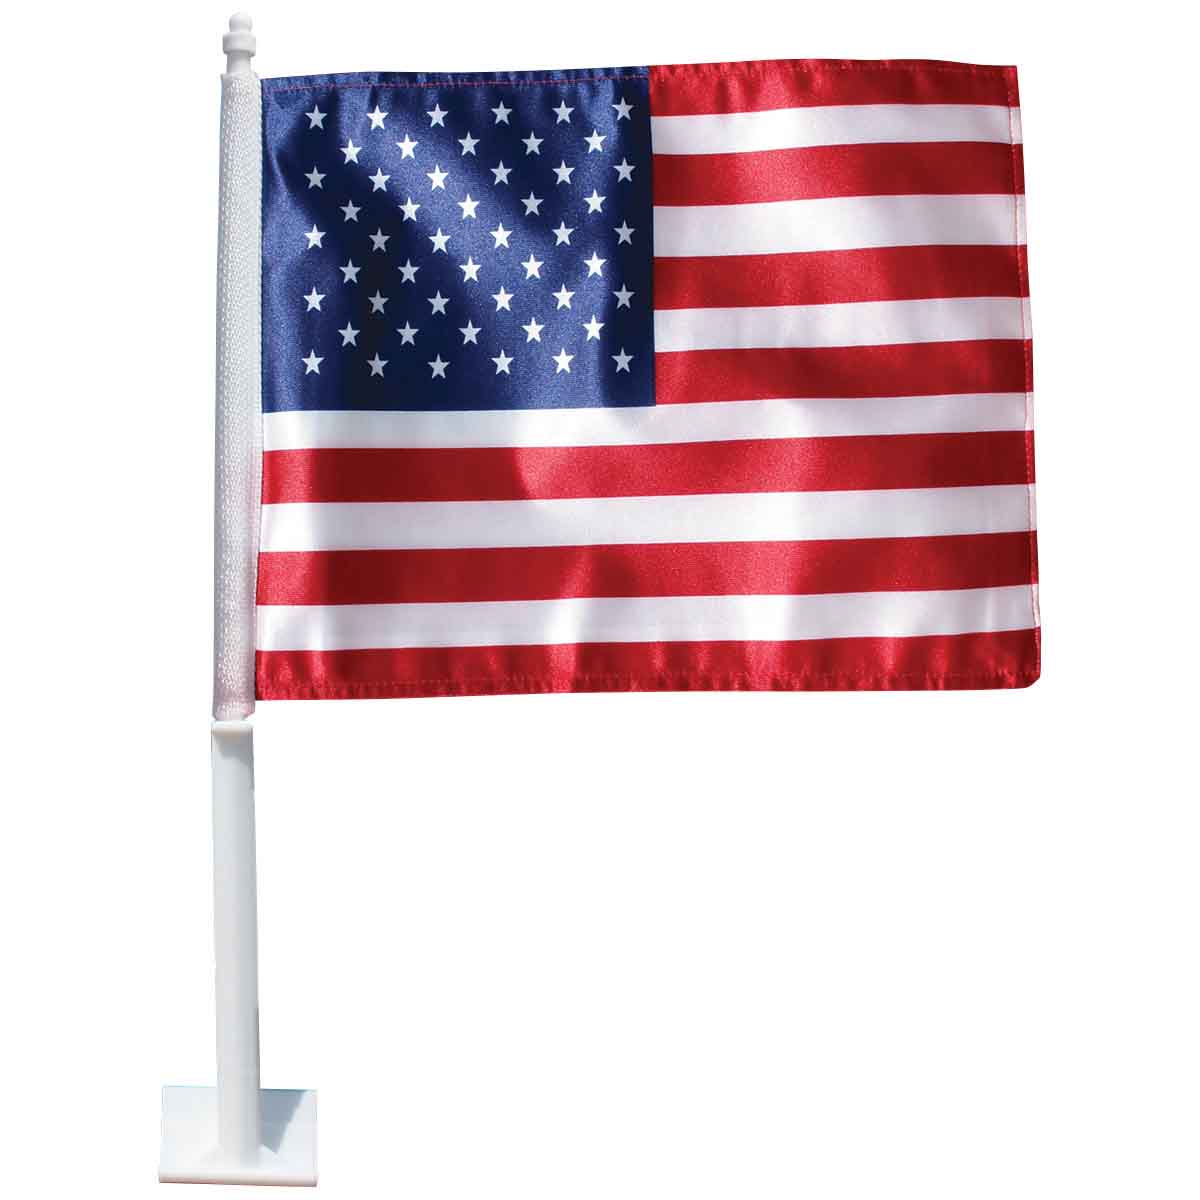 US Auto Window Flag - Complete Set